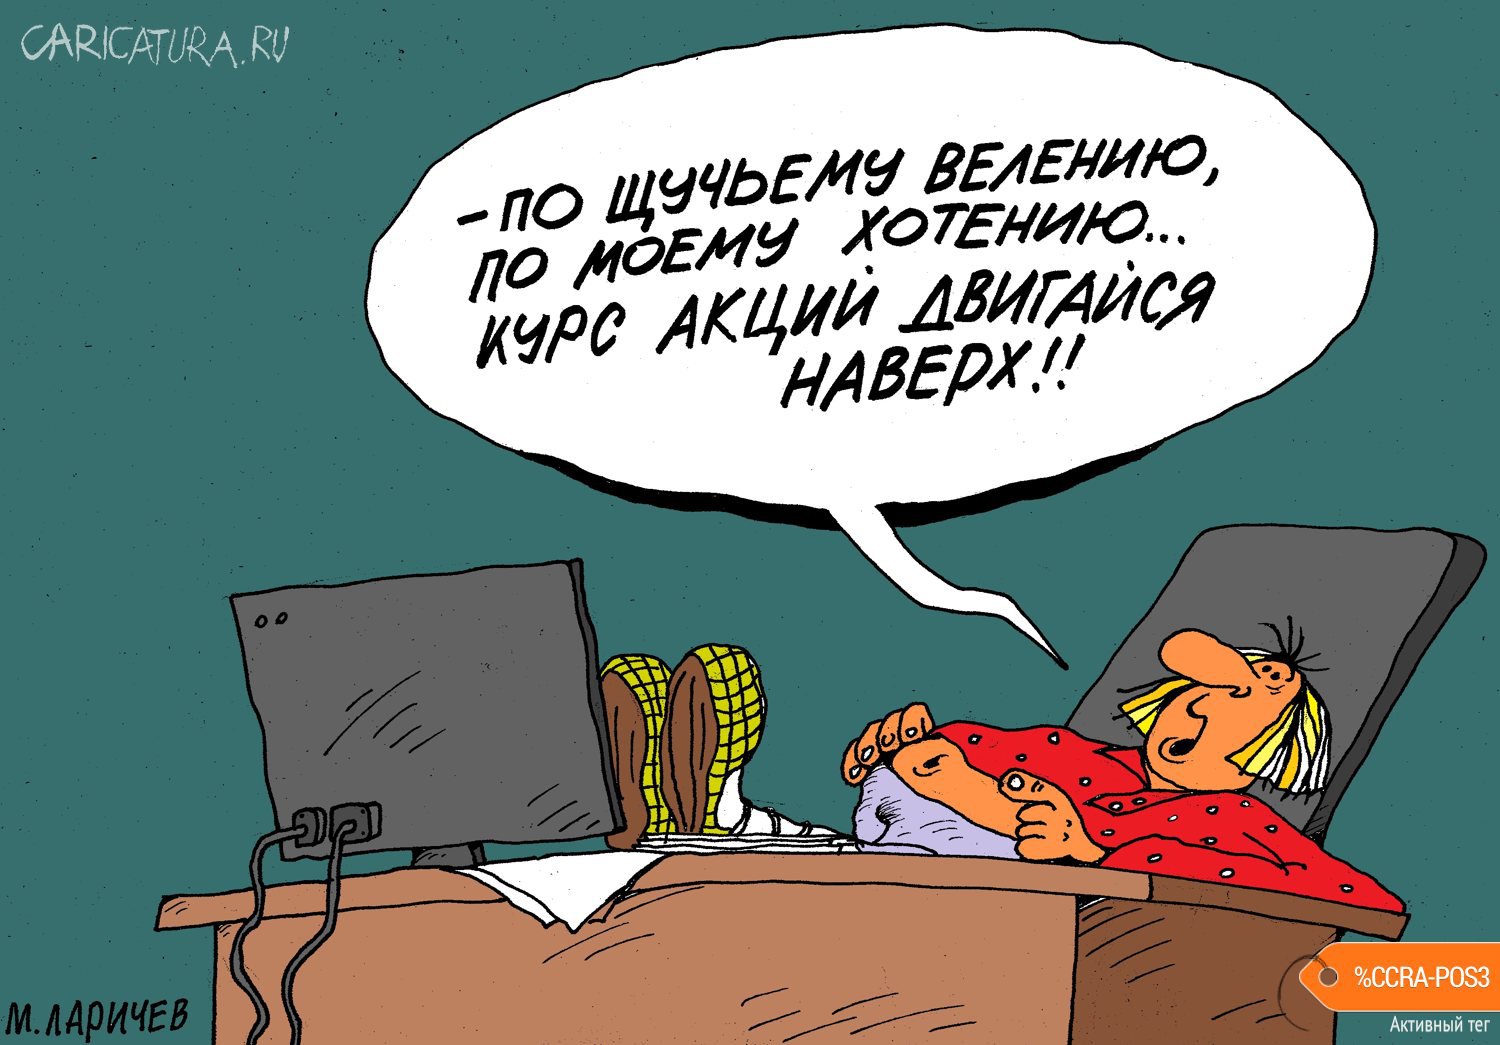 Карикатура "Хотение", Михаил Ларичев